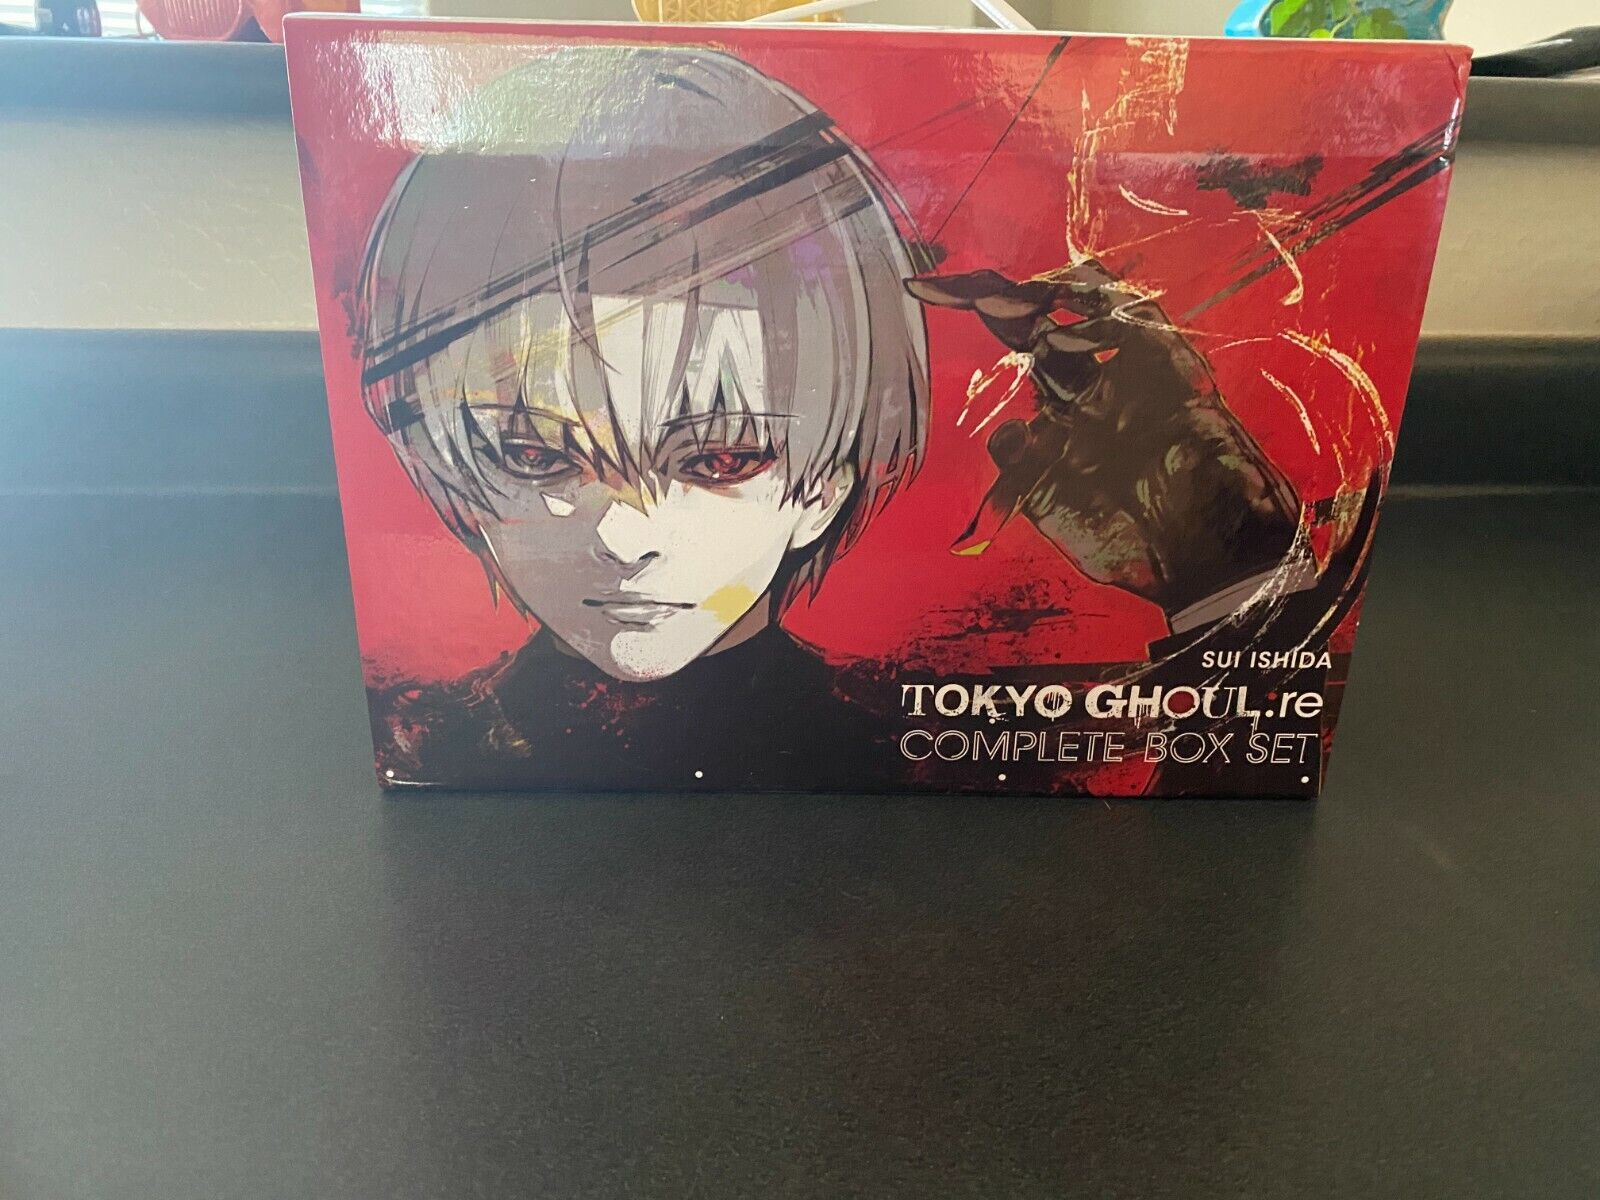 Tokyo Ghoul re box set manga